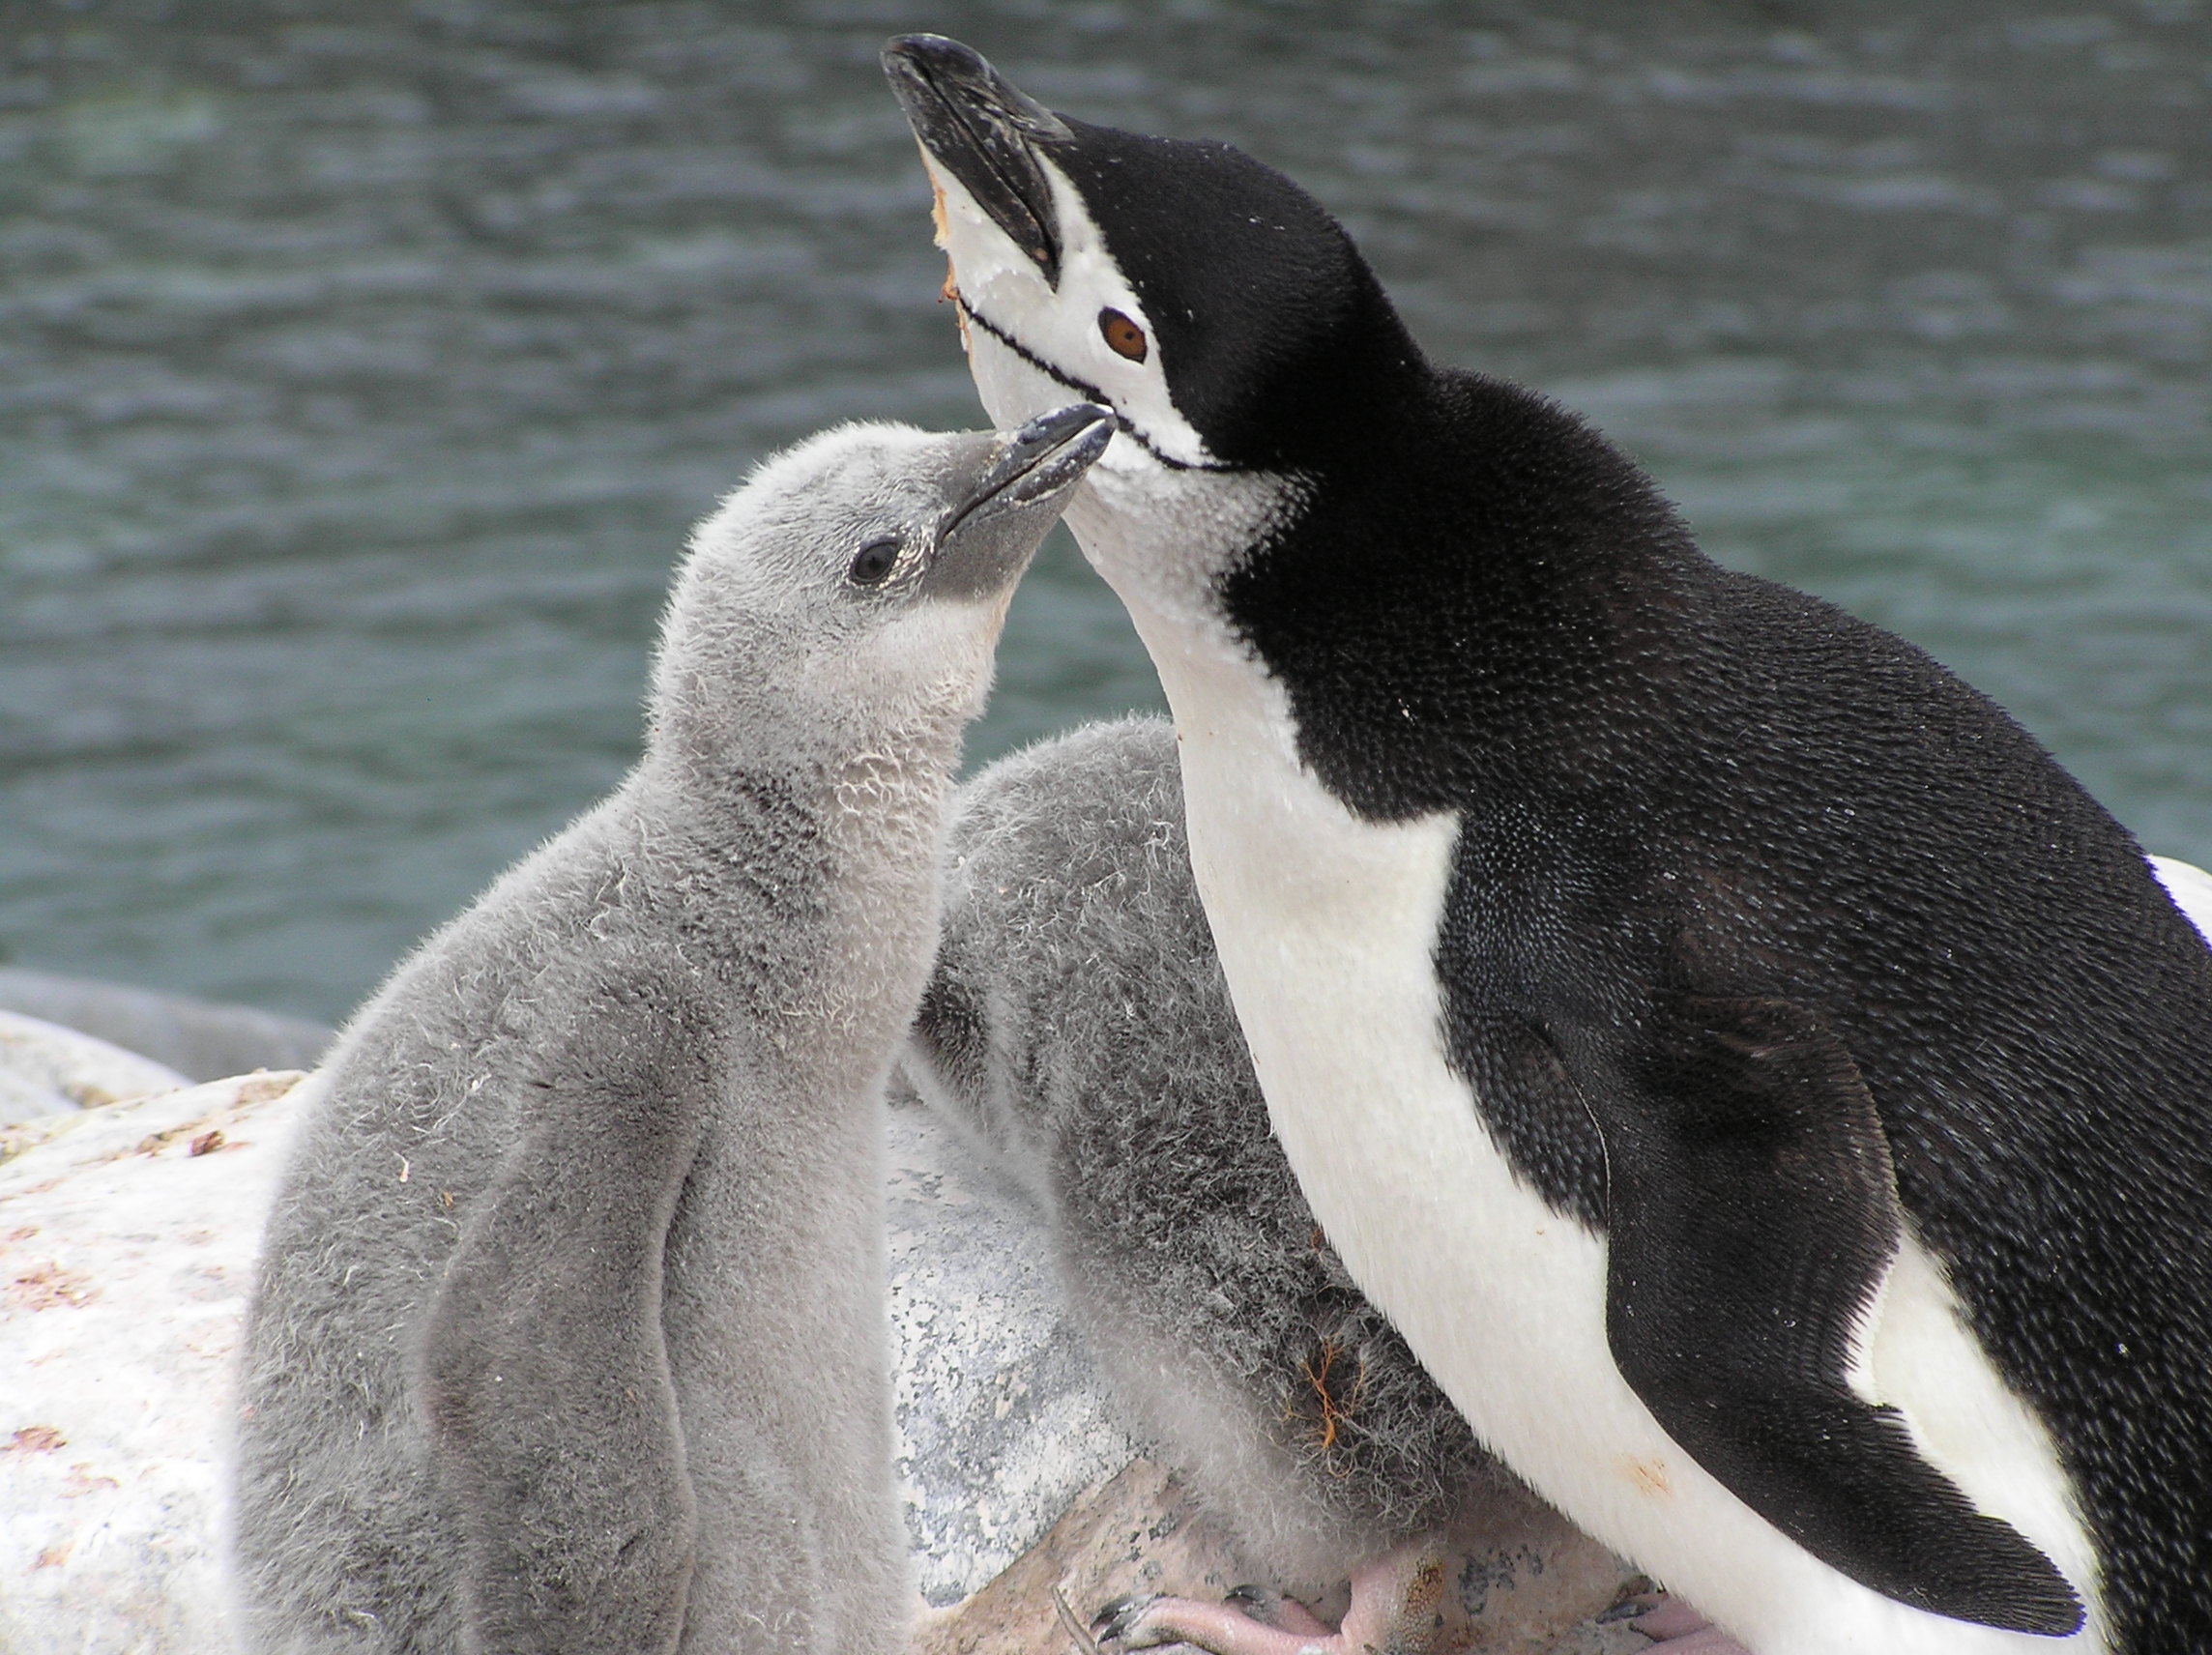 Neden soğuk havalarda ilk önce ellerin ve ayakların üşüdüğünü biliyor muydunuz? Bunun nedeni, kanın hayati organları sıcak tutmak için ayaklardan ve ellerden çekilmeye başlamasıdır. Burada dolaşım sistemimizin aldığı mucizevi bir tedbir ile karşı karşıyayız. Bu tedbirin bir benzeri de penguenlerde vardır. Hayatları buz üzerinde geçen penguenlerin ayakları nasıl oluyor da buz üstünde donmuyor hiç düşündünüz mü? Bunun cevabı penguenlerin sahip oldukları kontrollü kan akışında gizlidir. Penguenlerin vücutlarının büyük bölümü, sahip olduğu su geçirmez tüyleri sayesinde soğuktan korunur. Derilerinin altında bulunan kalın yağ tabakası ve tüyler, birlikte son derece iyi bir ısı izolasyonu sağlar. Hatta biraz güneşli bir günde penguen, karlar üzerinde bulunmasına rağmen aşırı ısınabilir.